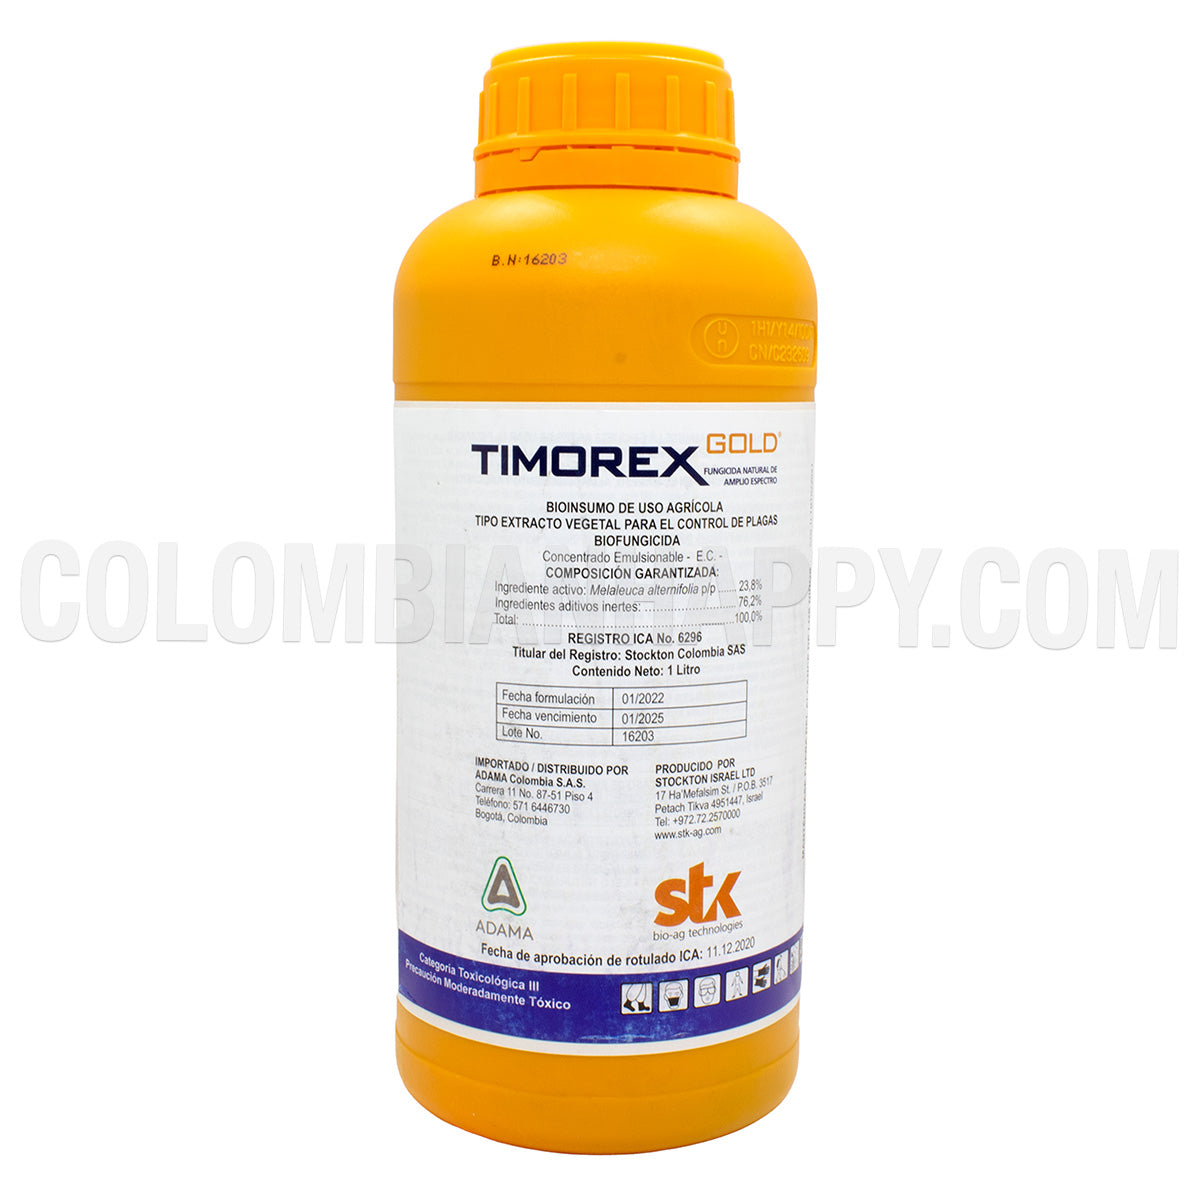 Timorex Gold - Adama